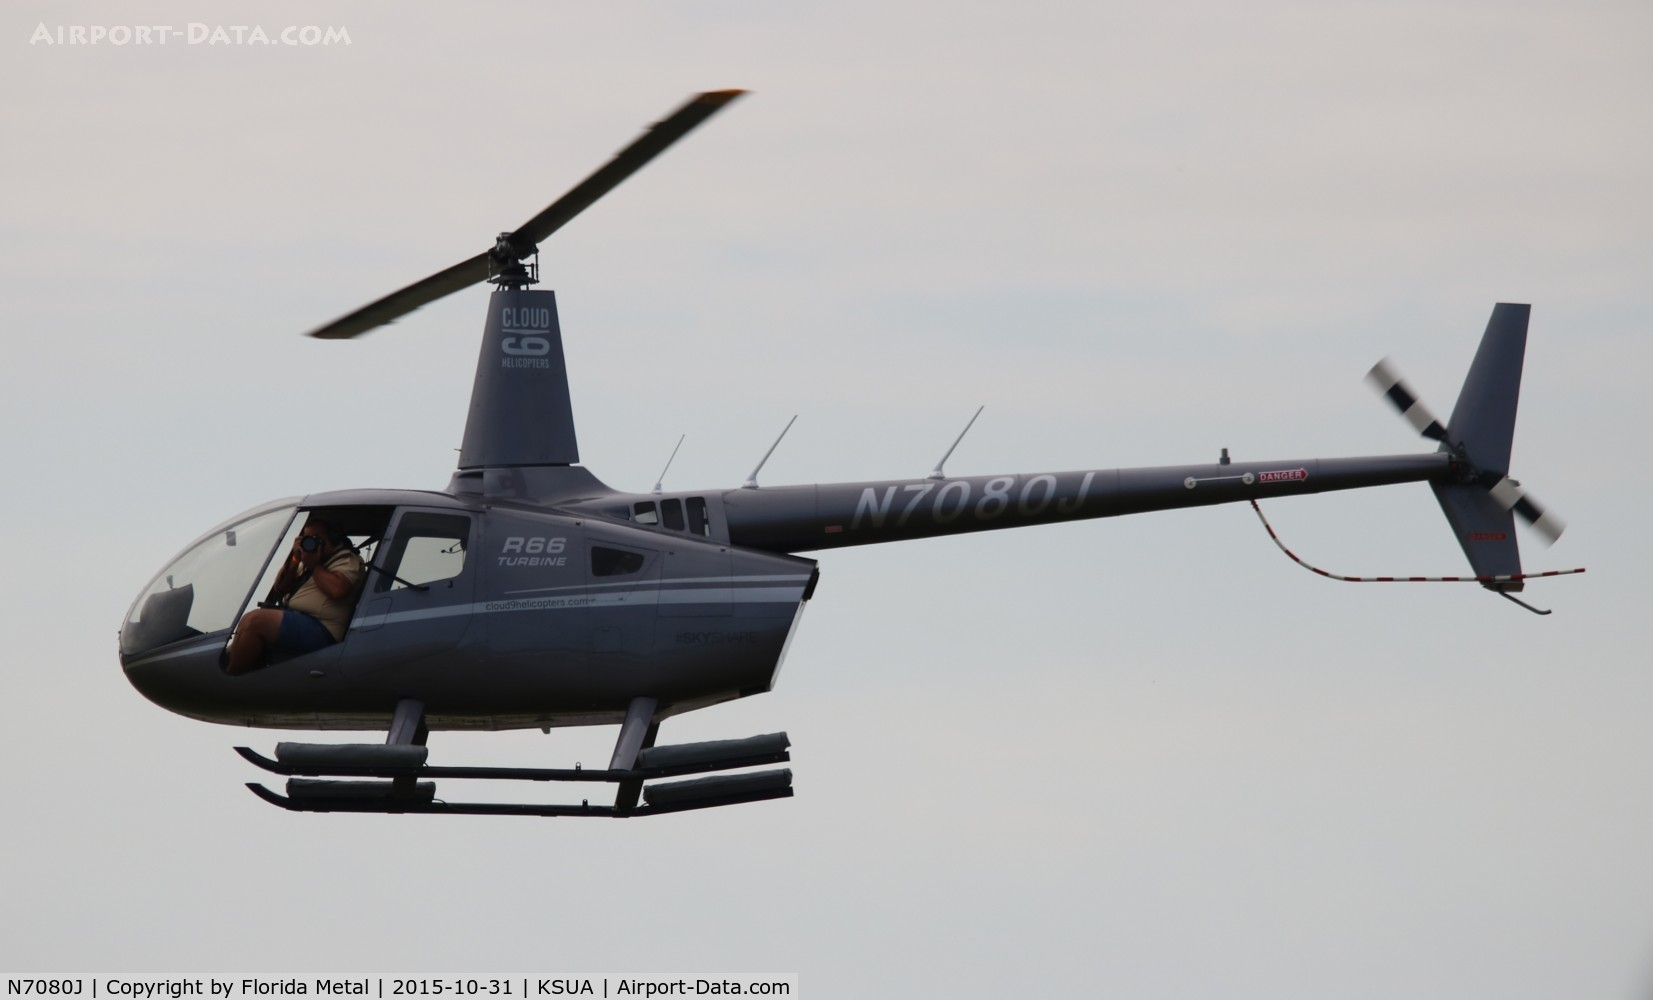 N7080J, 2013 Robinson R66 Turbine C/N 0453, R66 chopper